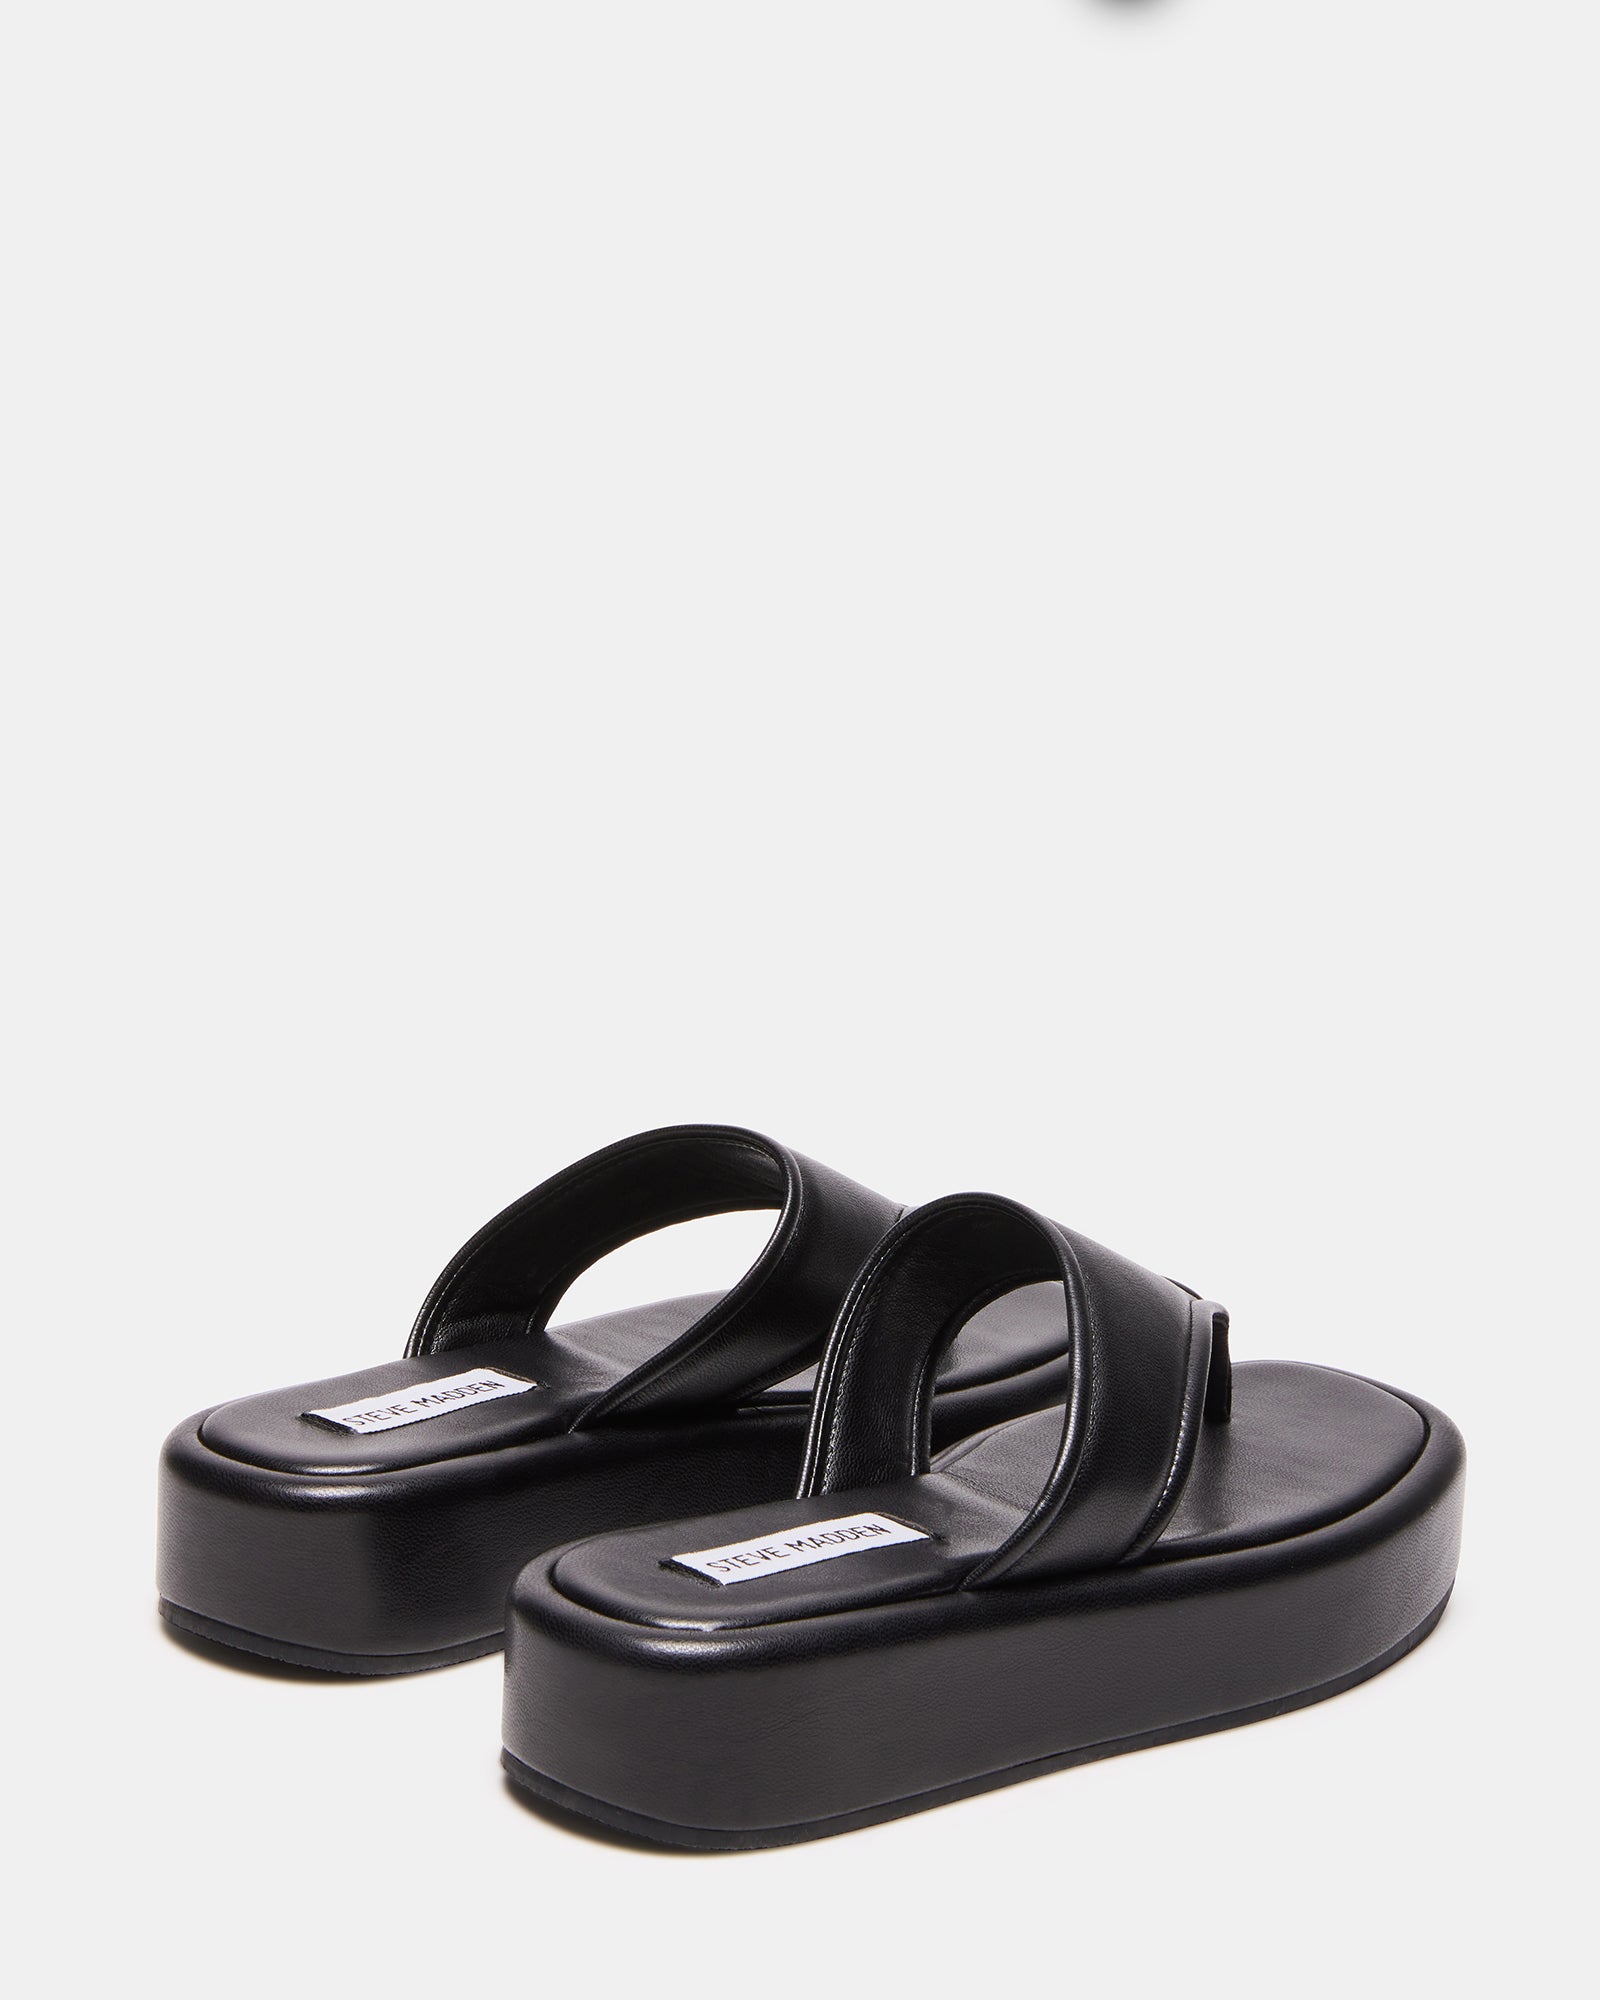 SABANA Black Thong Sandal | Women's Sandals – Steve Madden